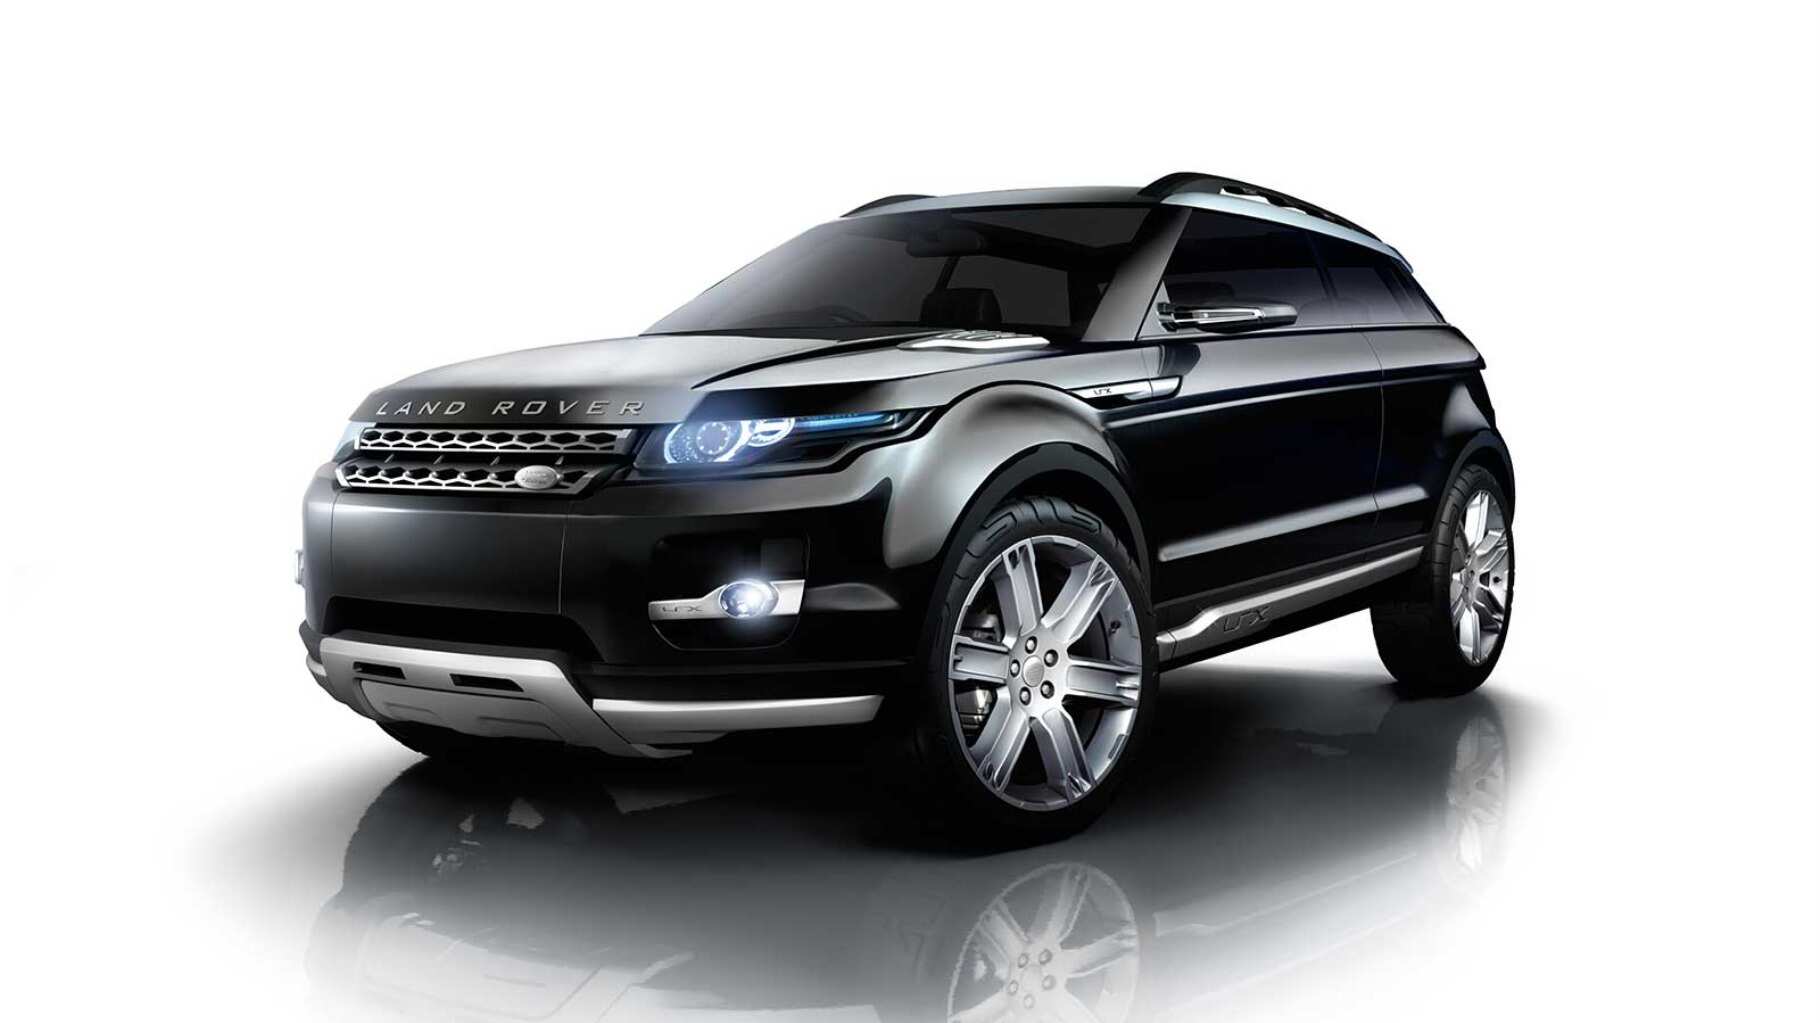 Range Rover 2008 - LRX Concept